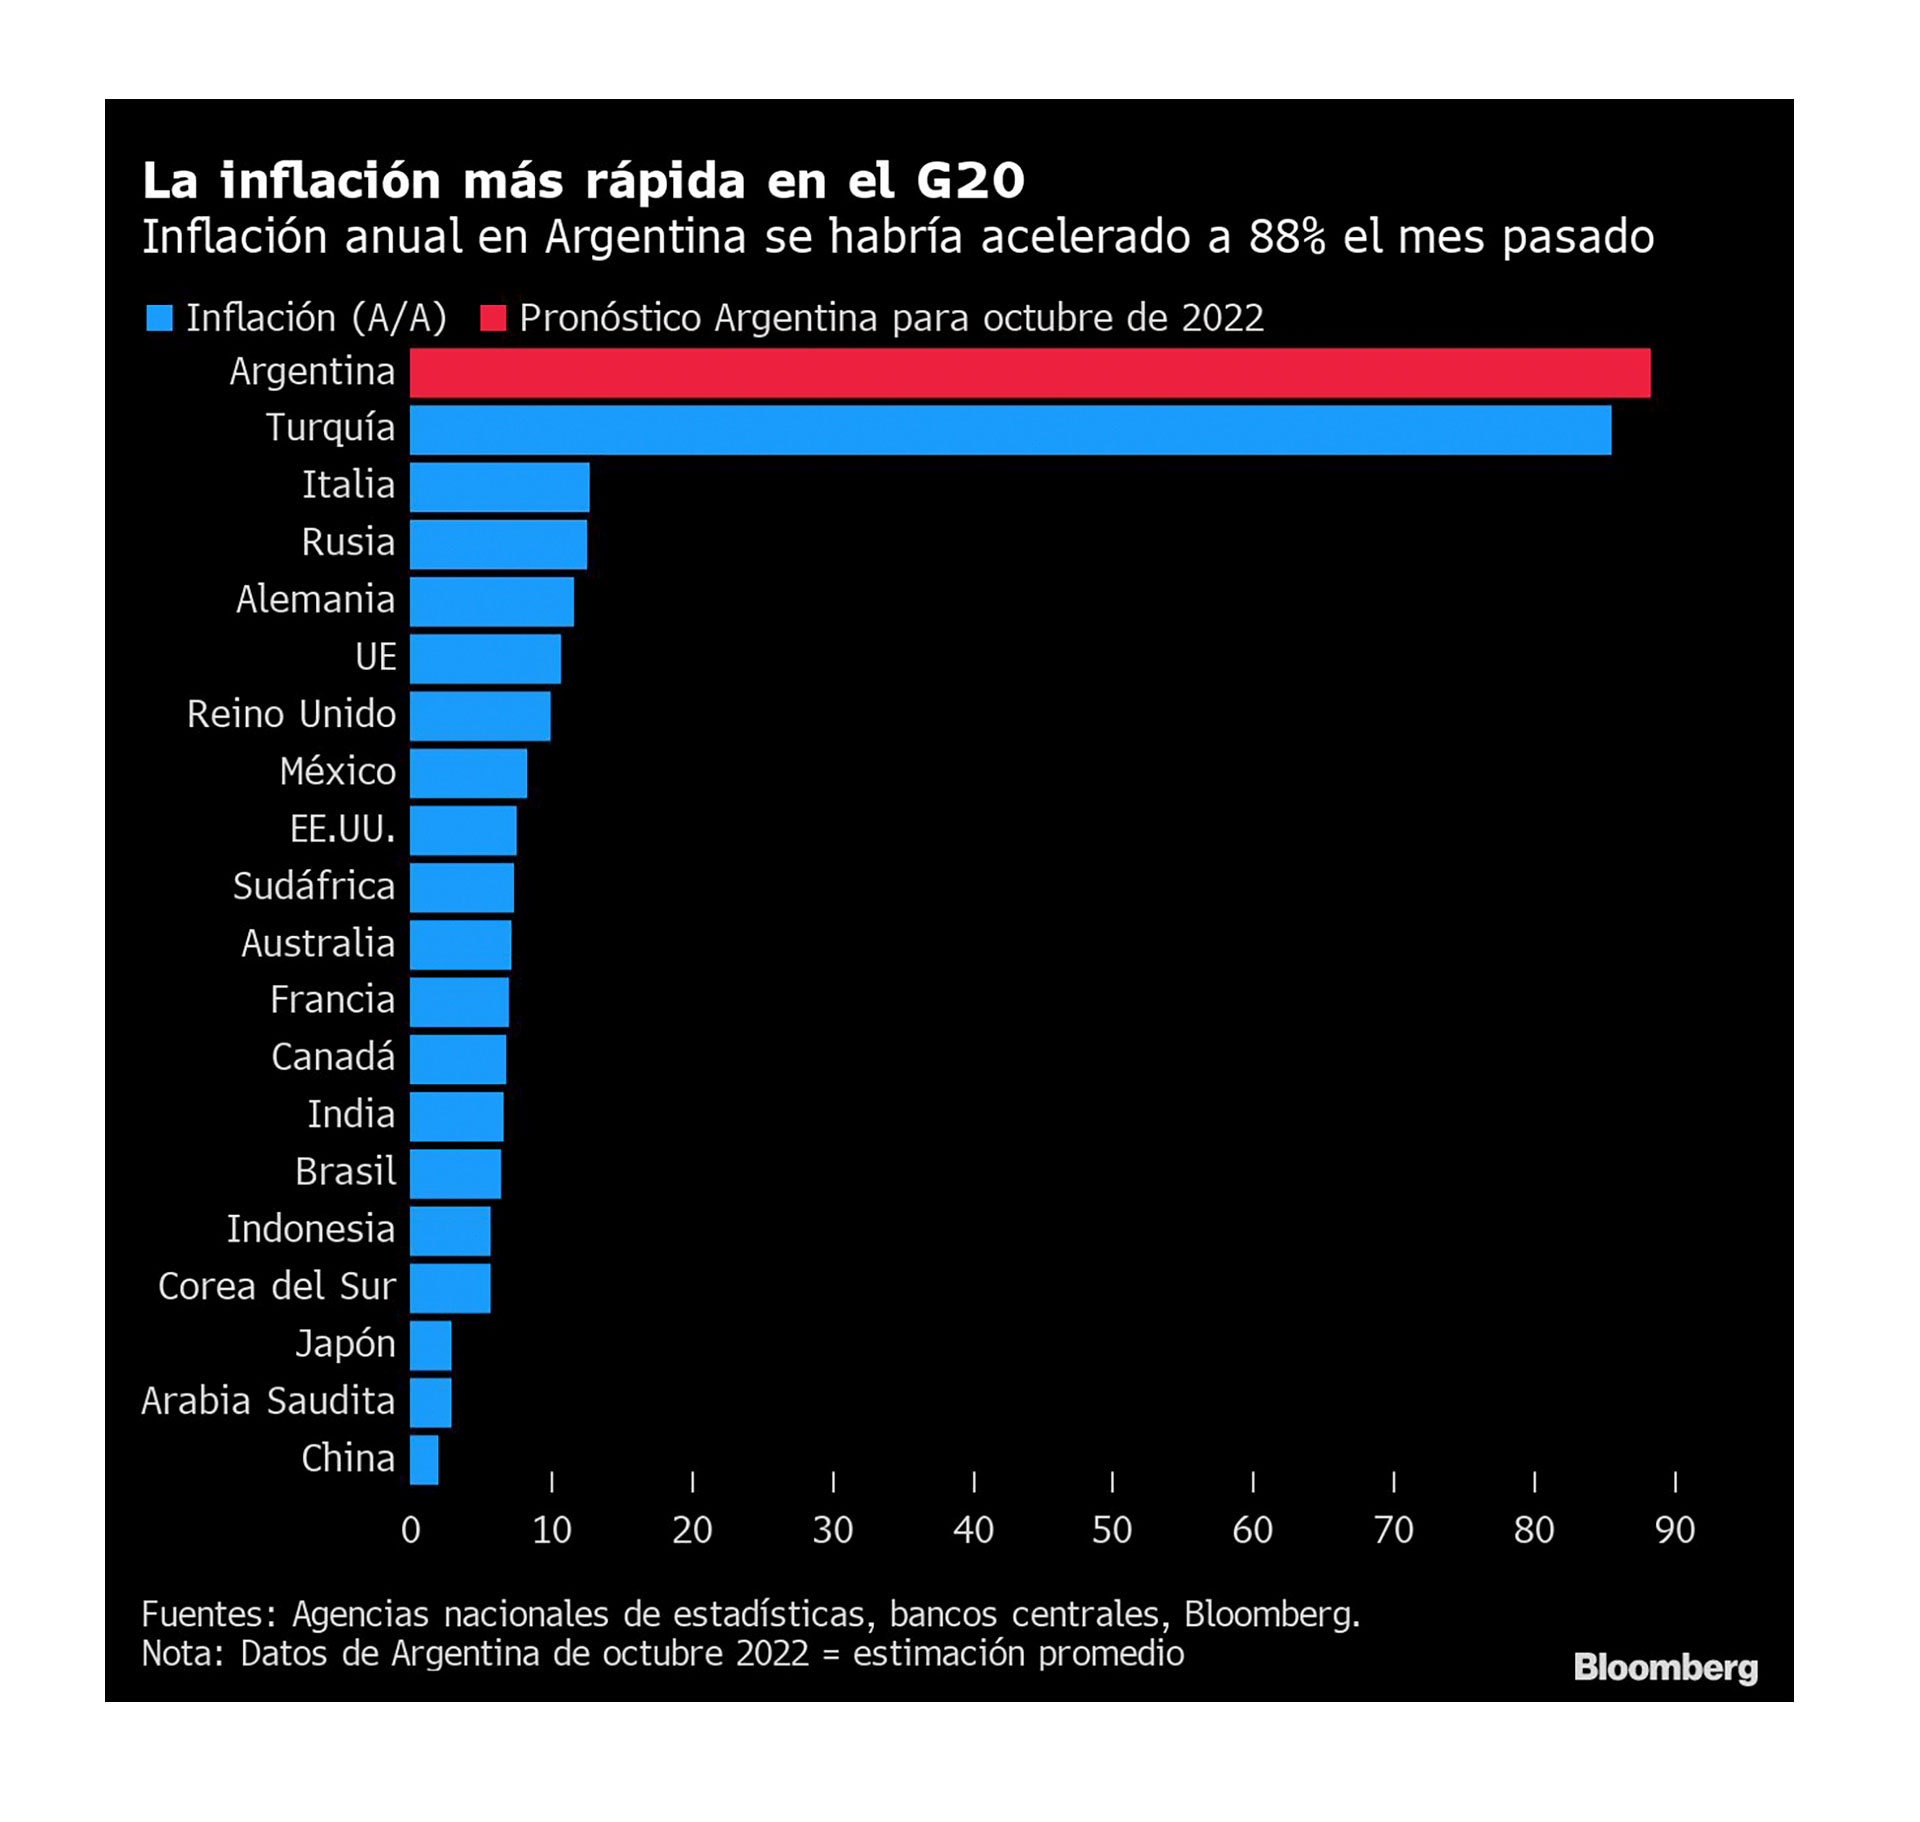 La inflación en los países del G20, según datos de Bloomberg